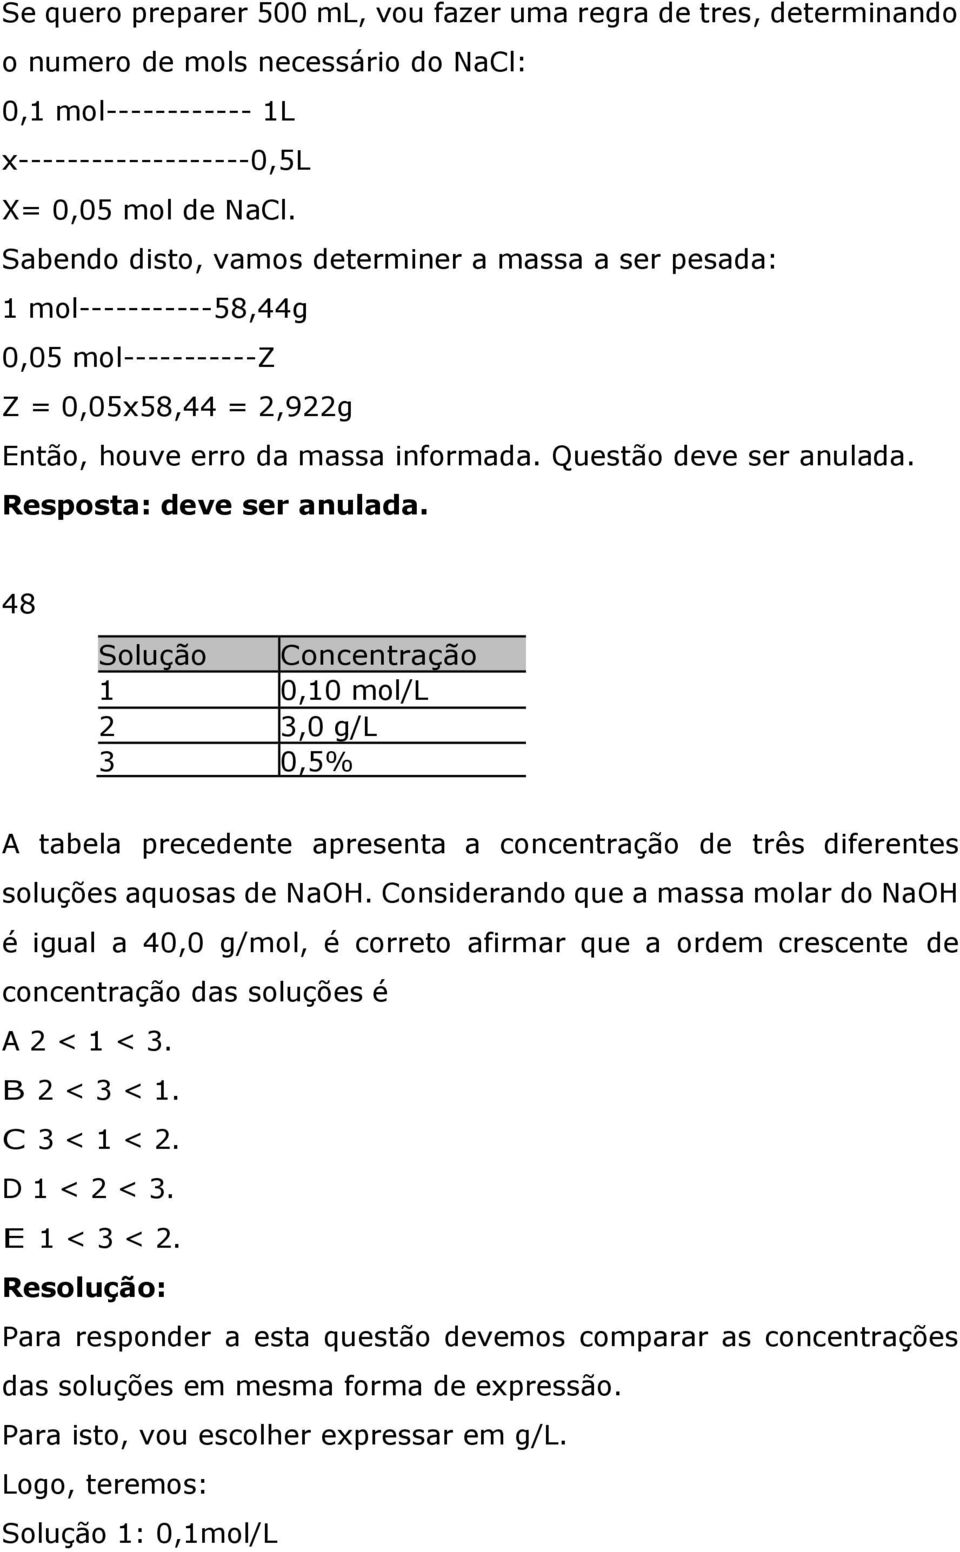 Resposta: deve ser anulada. 48 Solução Concentração 1 0,10 mol/l 2 3,0 g/l 3 0,5% (massa/volume) A tabela precedente apresenta a concentração de três diferentes soluções aquosas de NaOH.